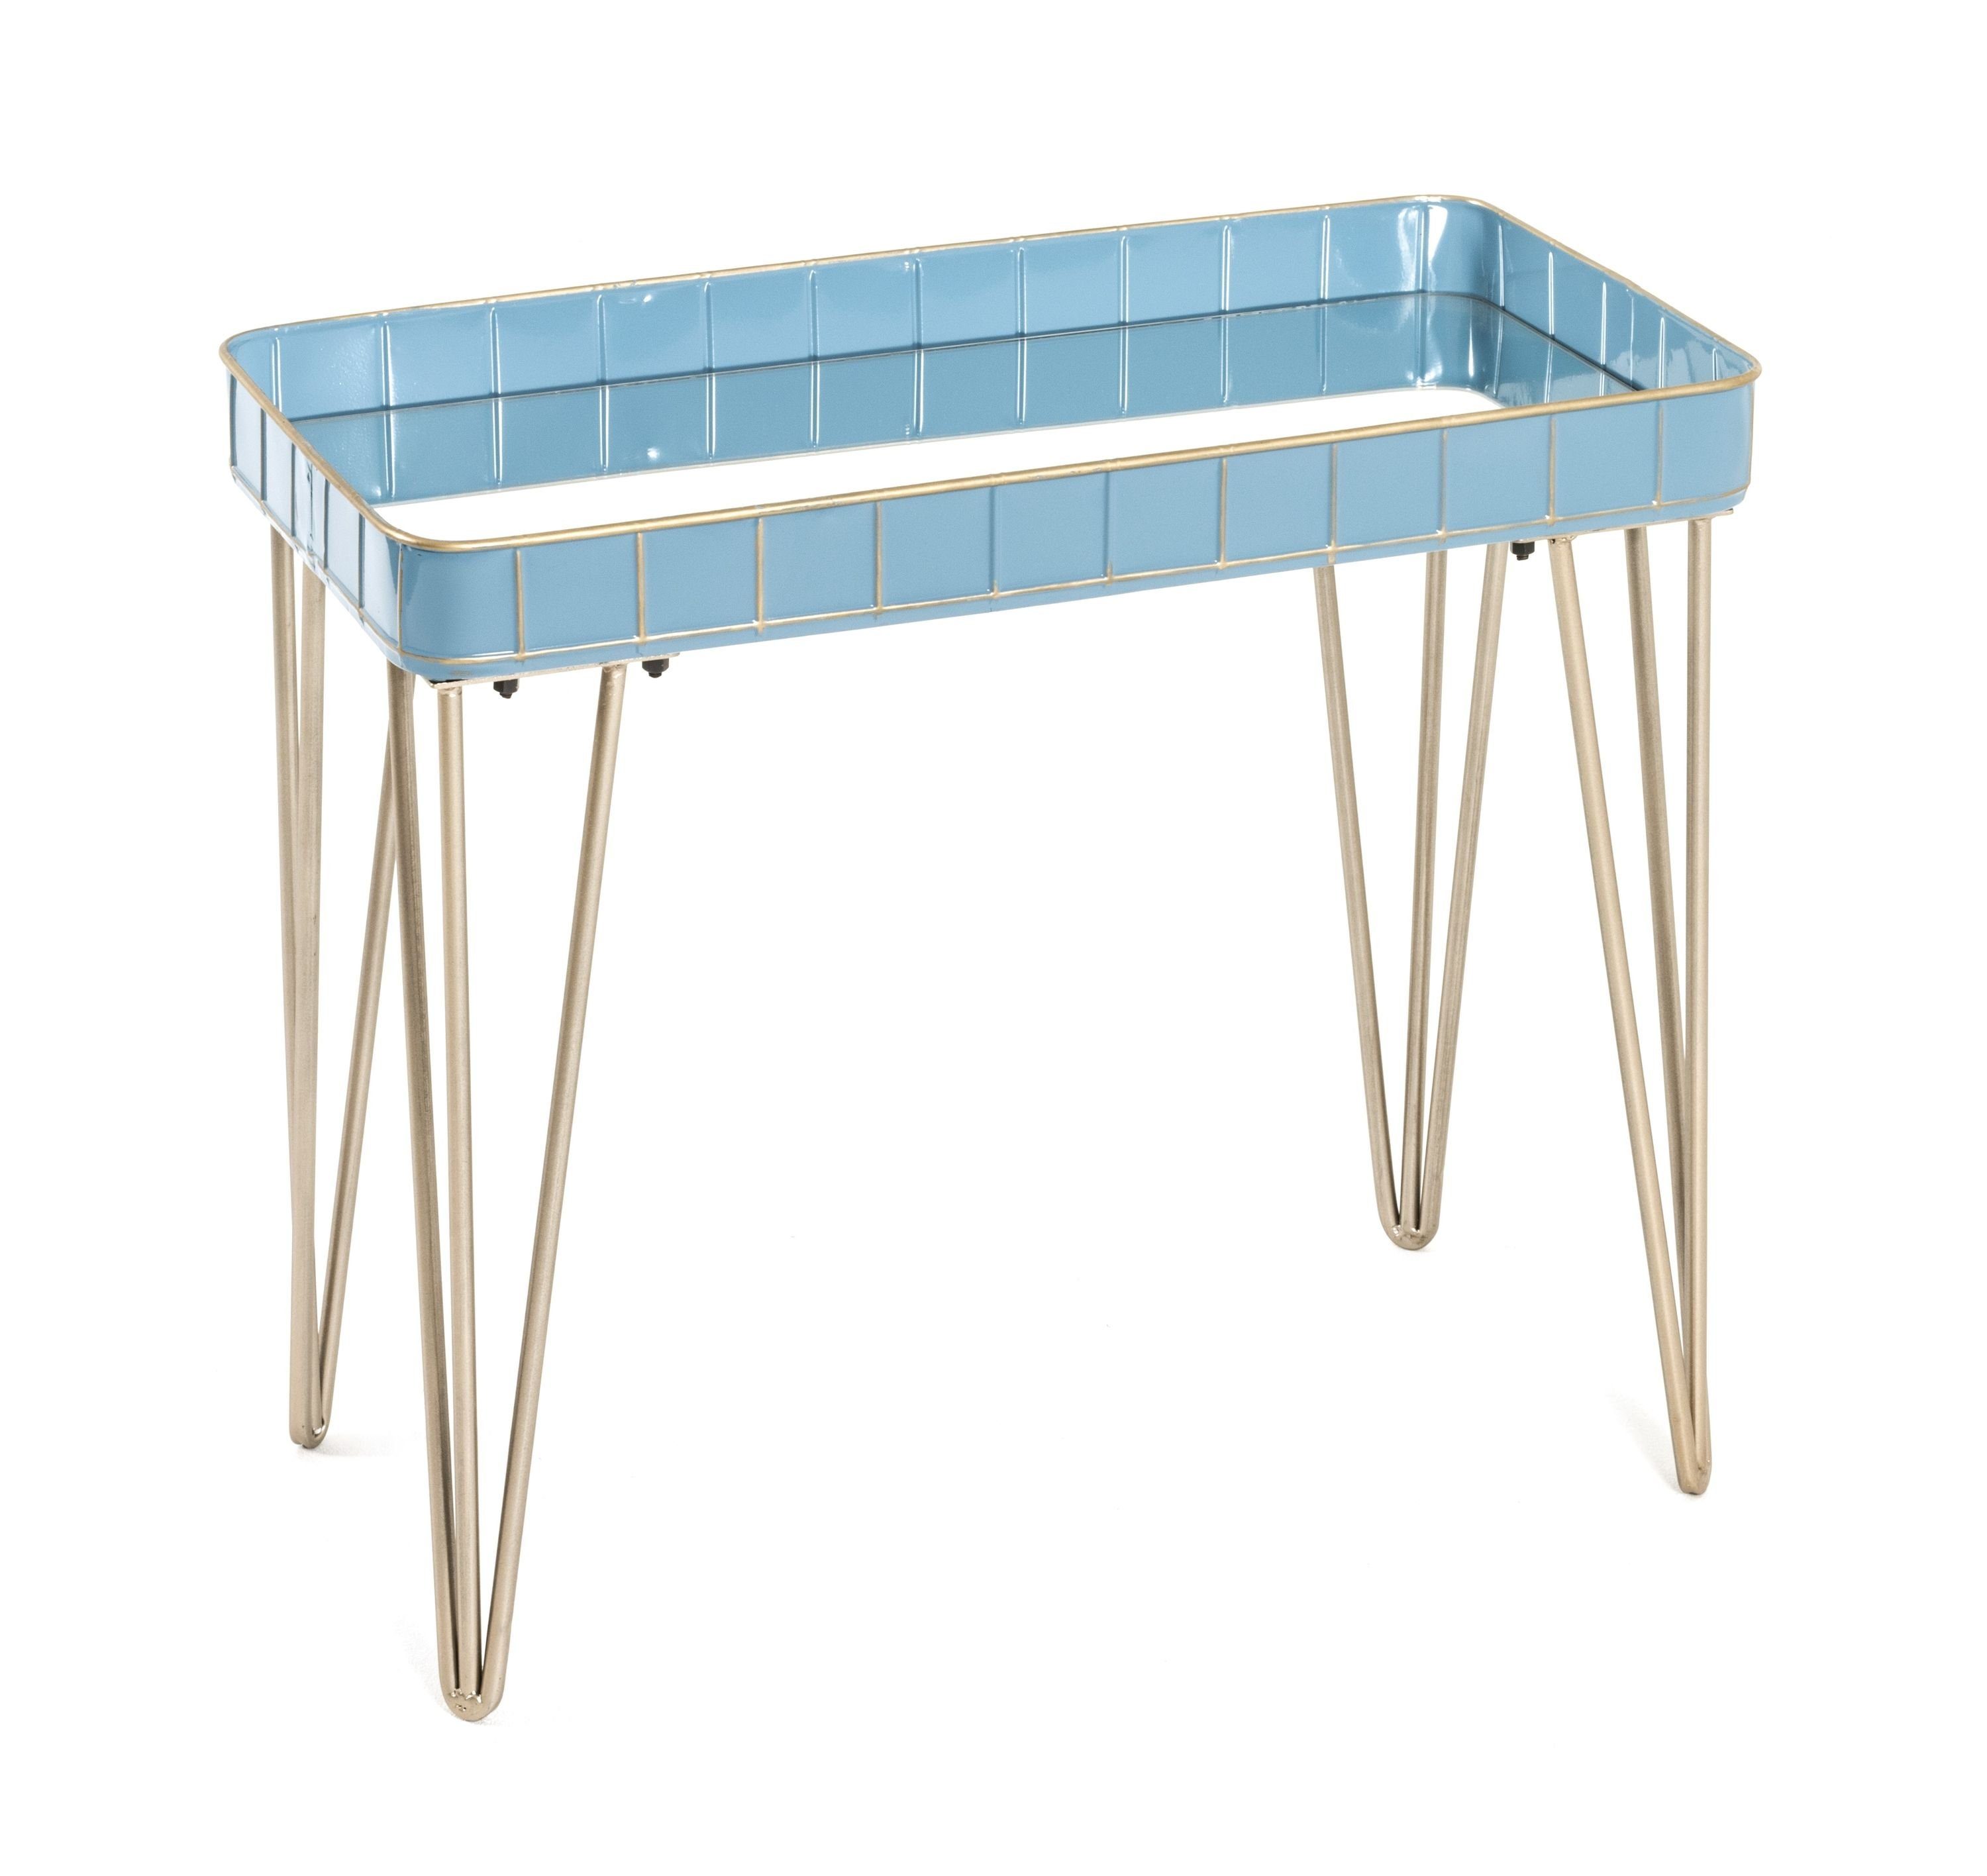 HAKU Beistelltisch Beistelltisch, HAKU Möbel Beistelltisch blau-bronze (BHT 60x54x31 cm) BHT 60x54x31 cm